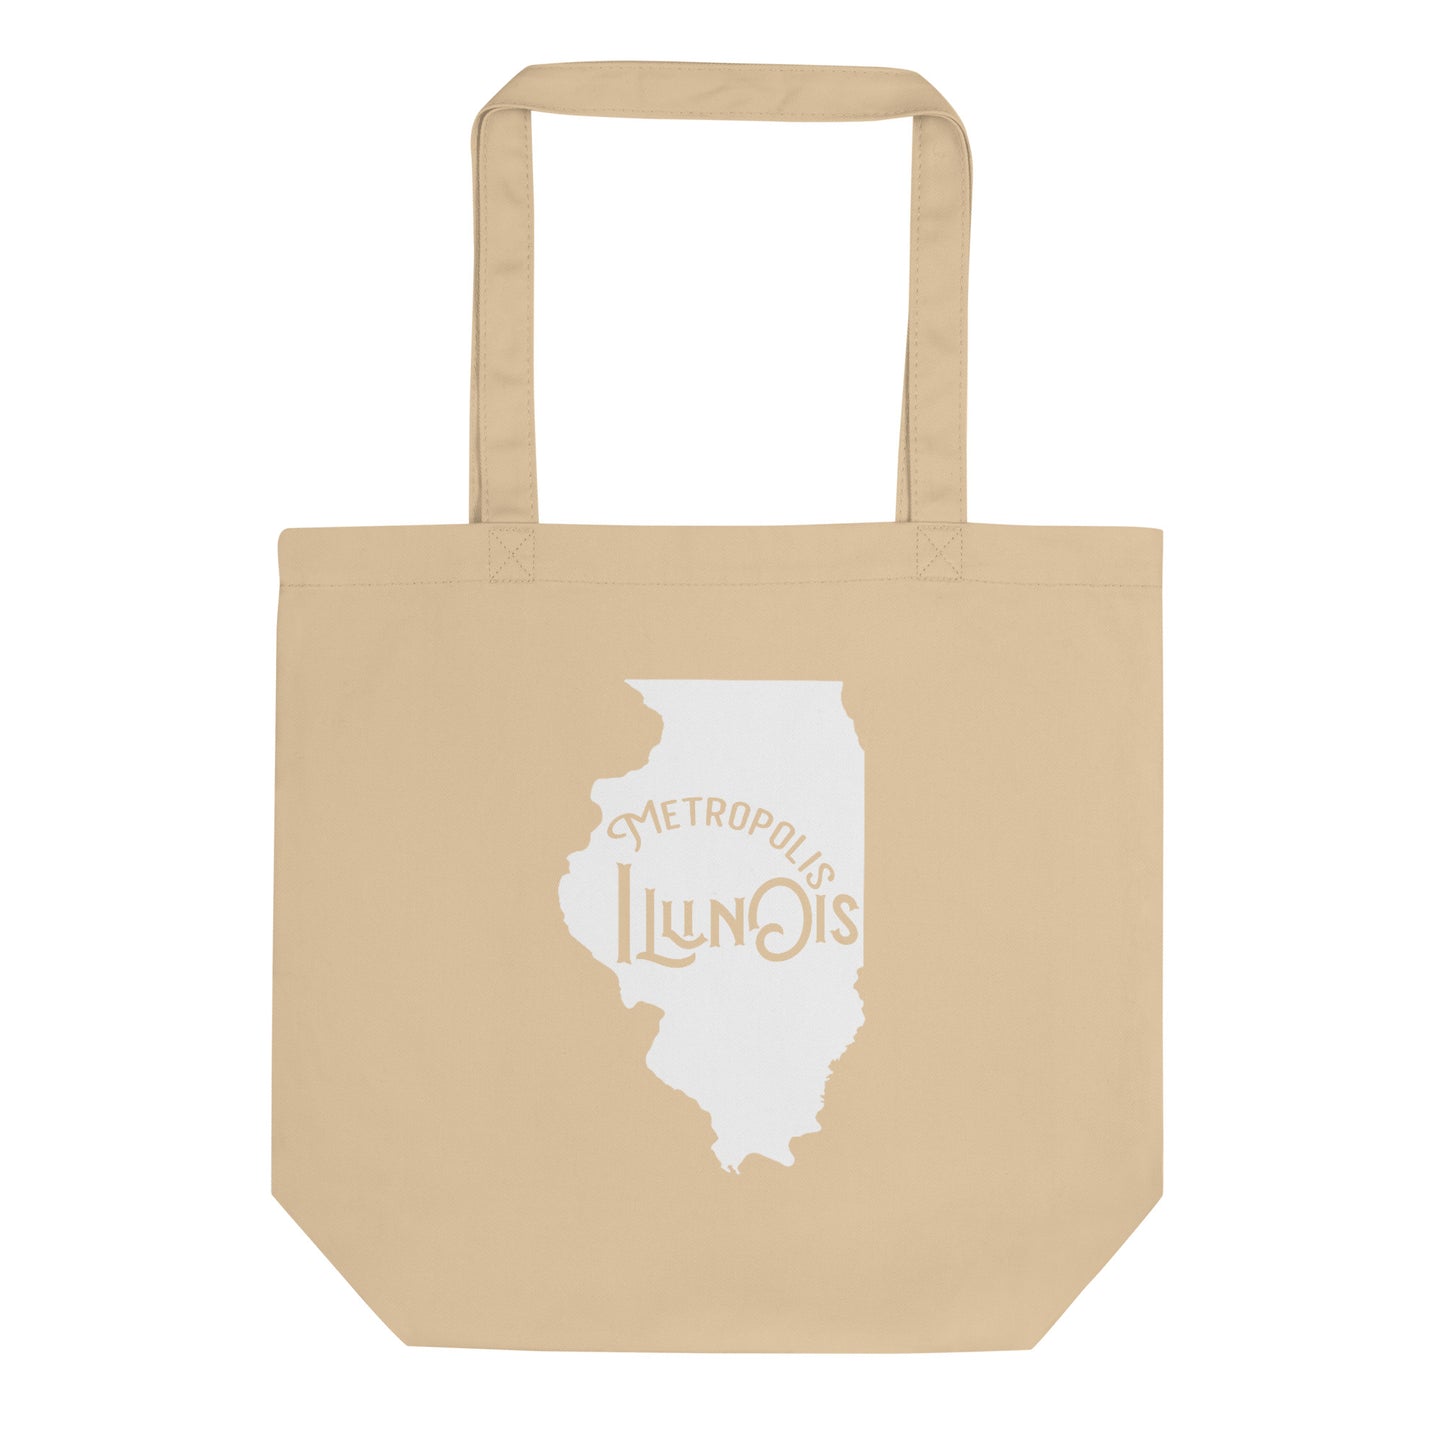 Metropolis Illinois Eco Tote Bag